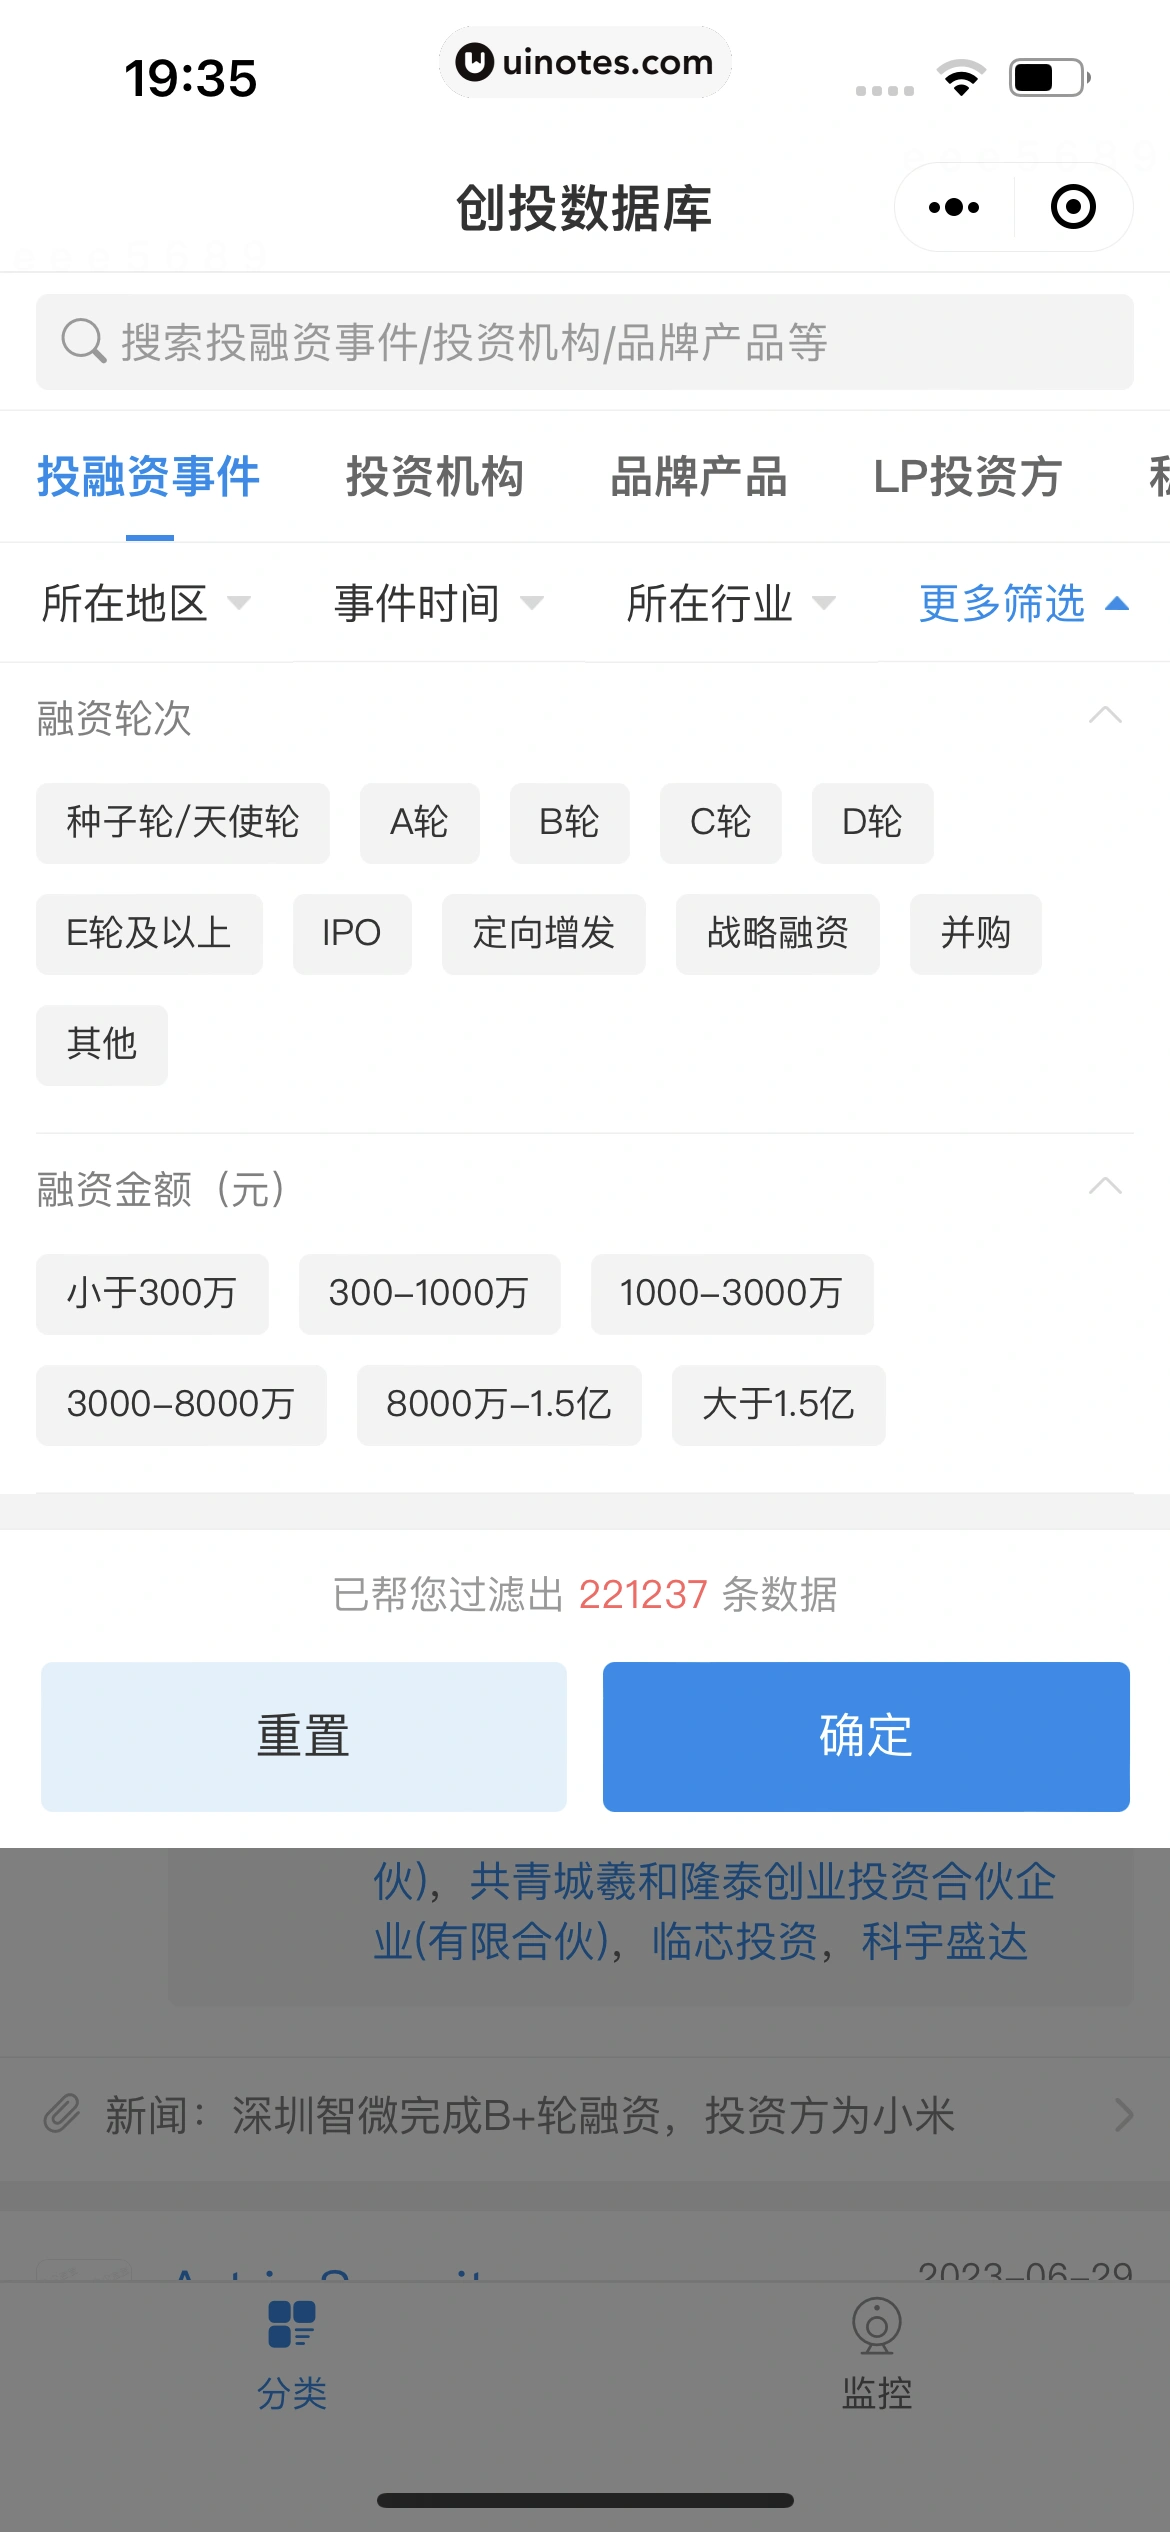 企查查 App 截图 560 - UI Notes